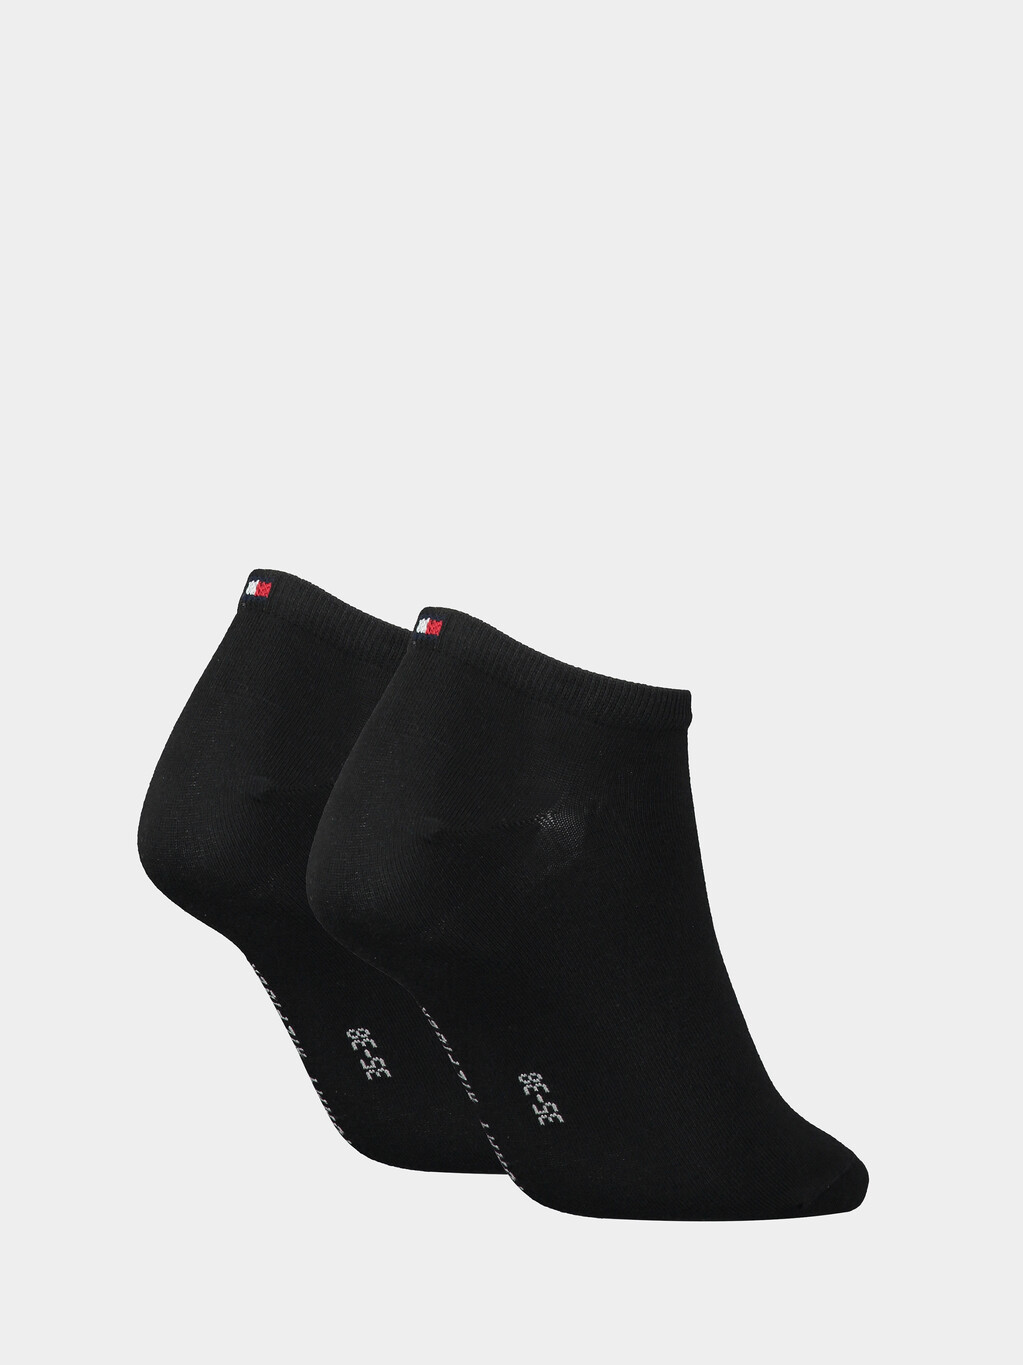 2 件裝運動襪, black, hi-res